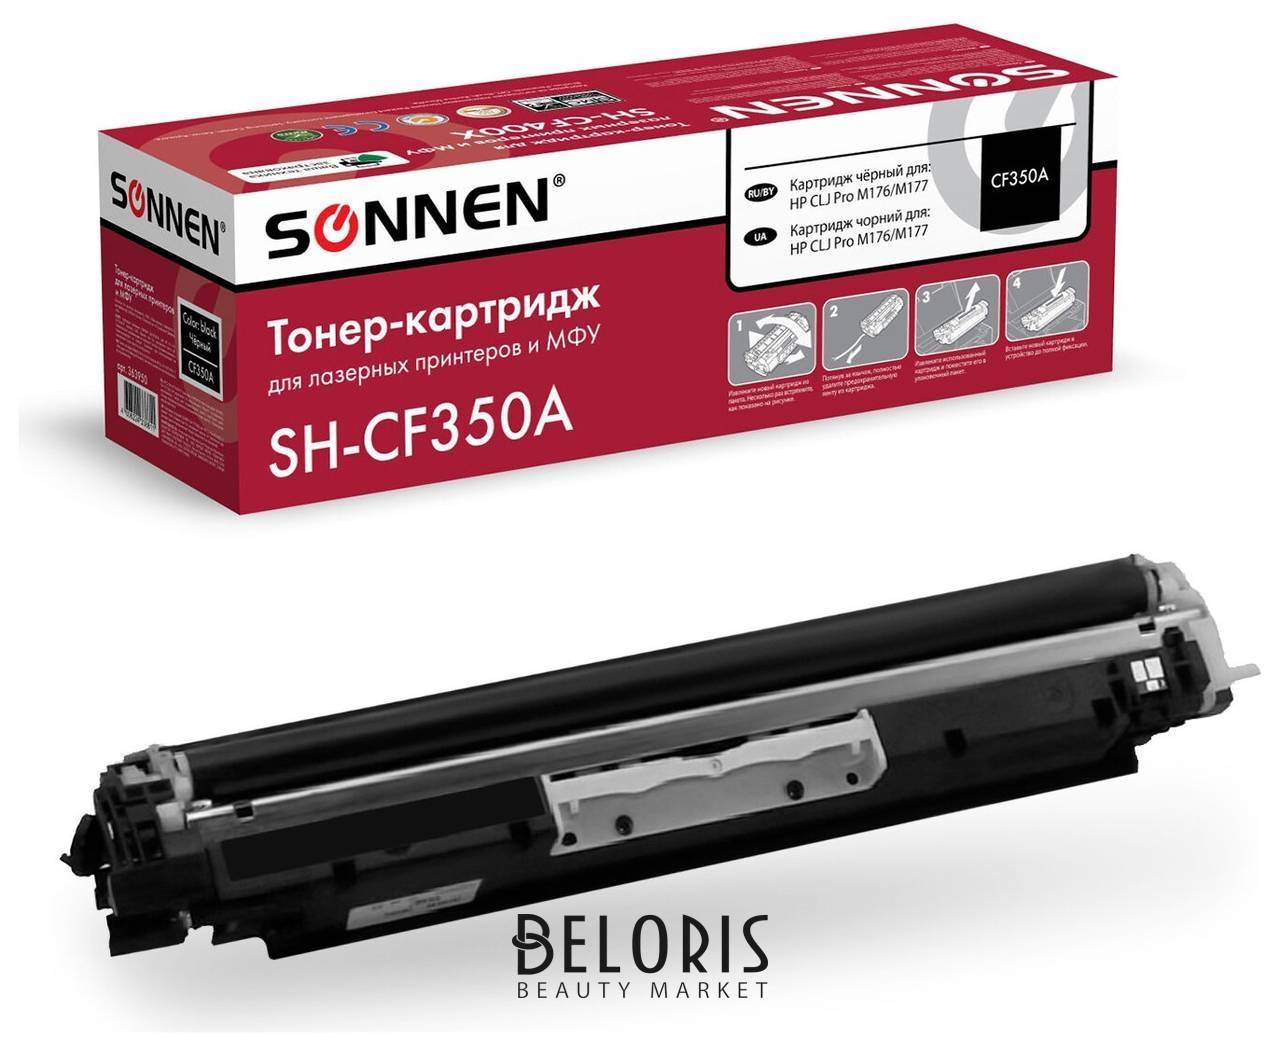 Картридж лазерный Sonnen (Sh-cf350a) для HP CLJ Pro M176/m177 высшее качество, черный, 1300 страниц, 363950 Sonnen